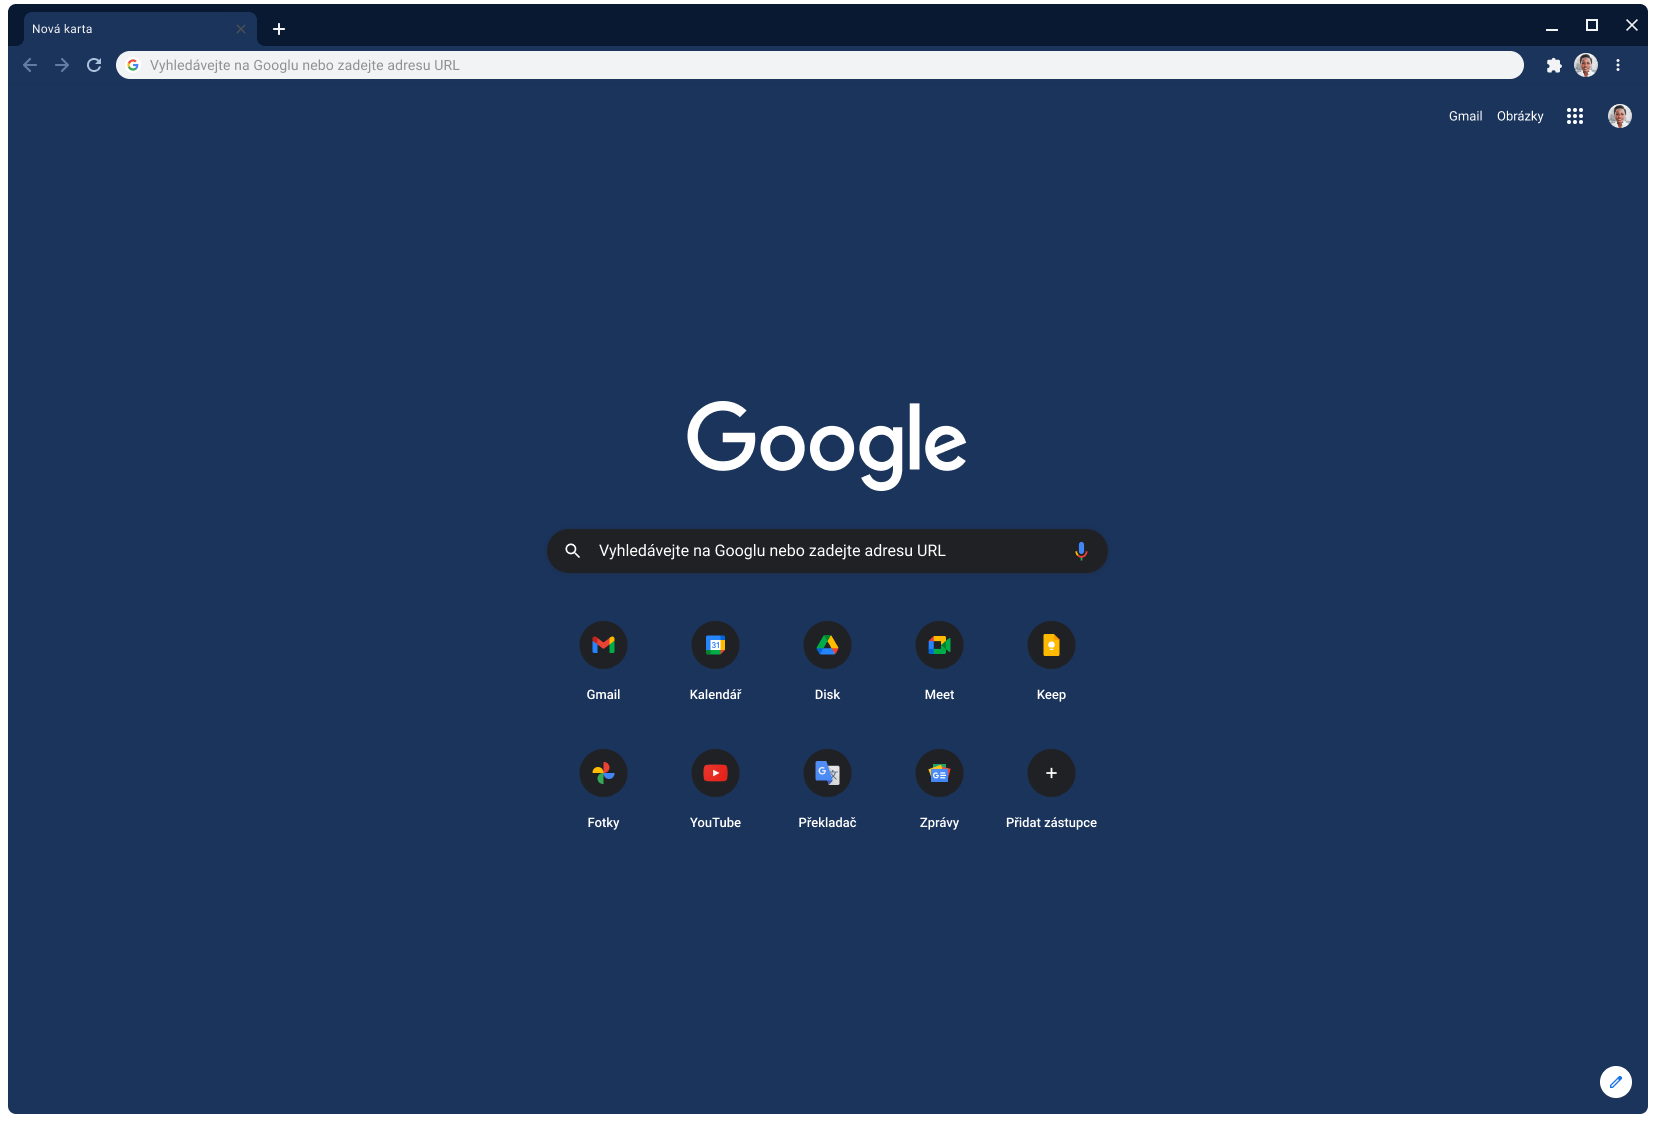 Okno prohlížeče Chrome s webem Google.com v břidlicovém motivu.